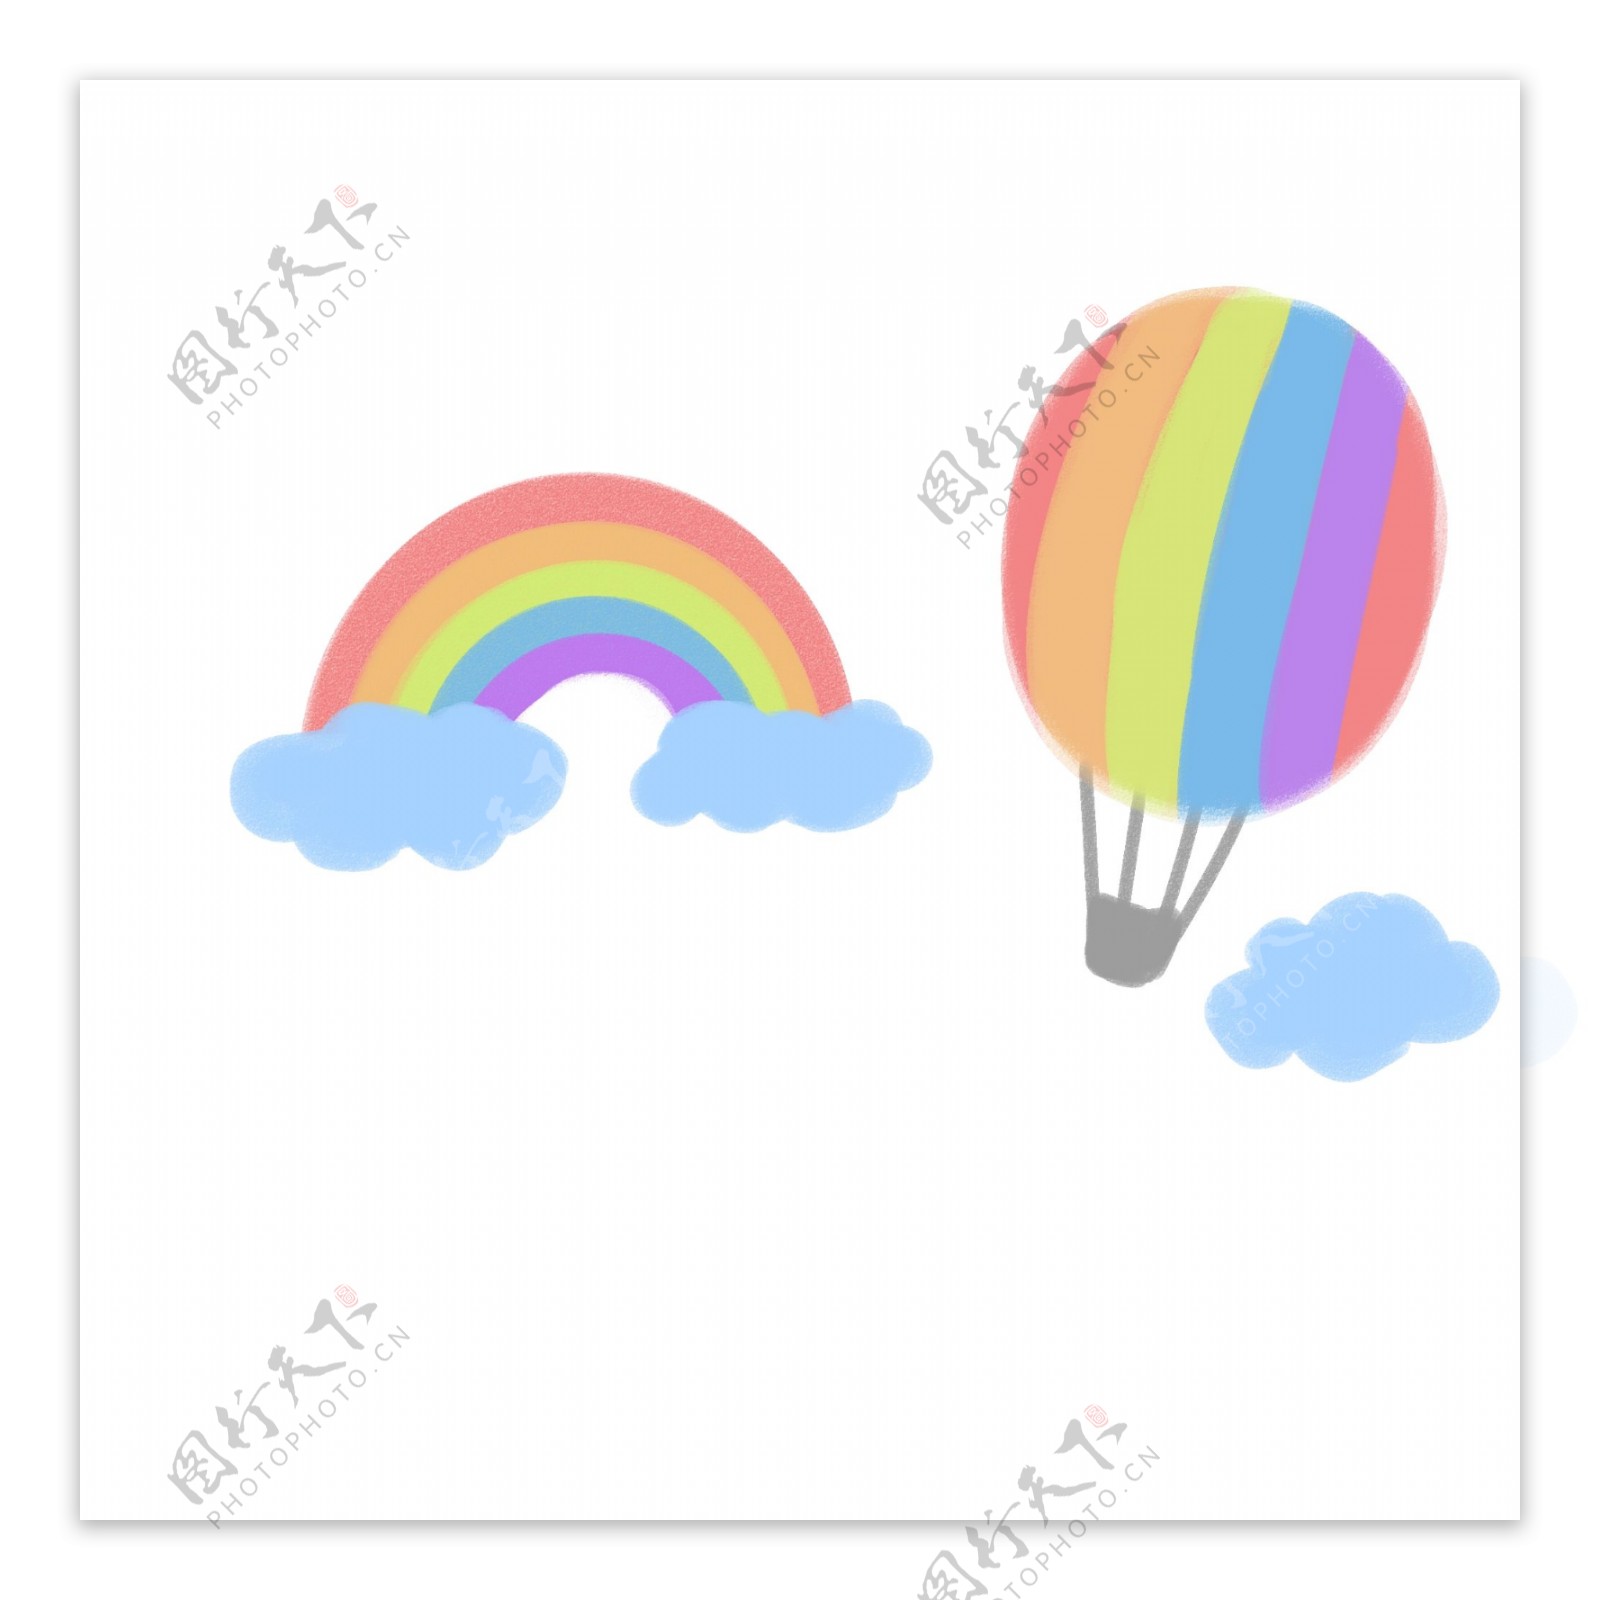 可爱插画风彩虹中漂浮热气球图案